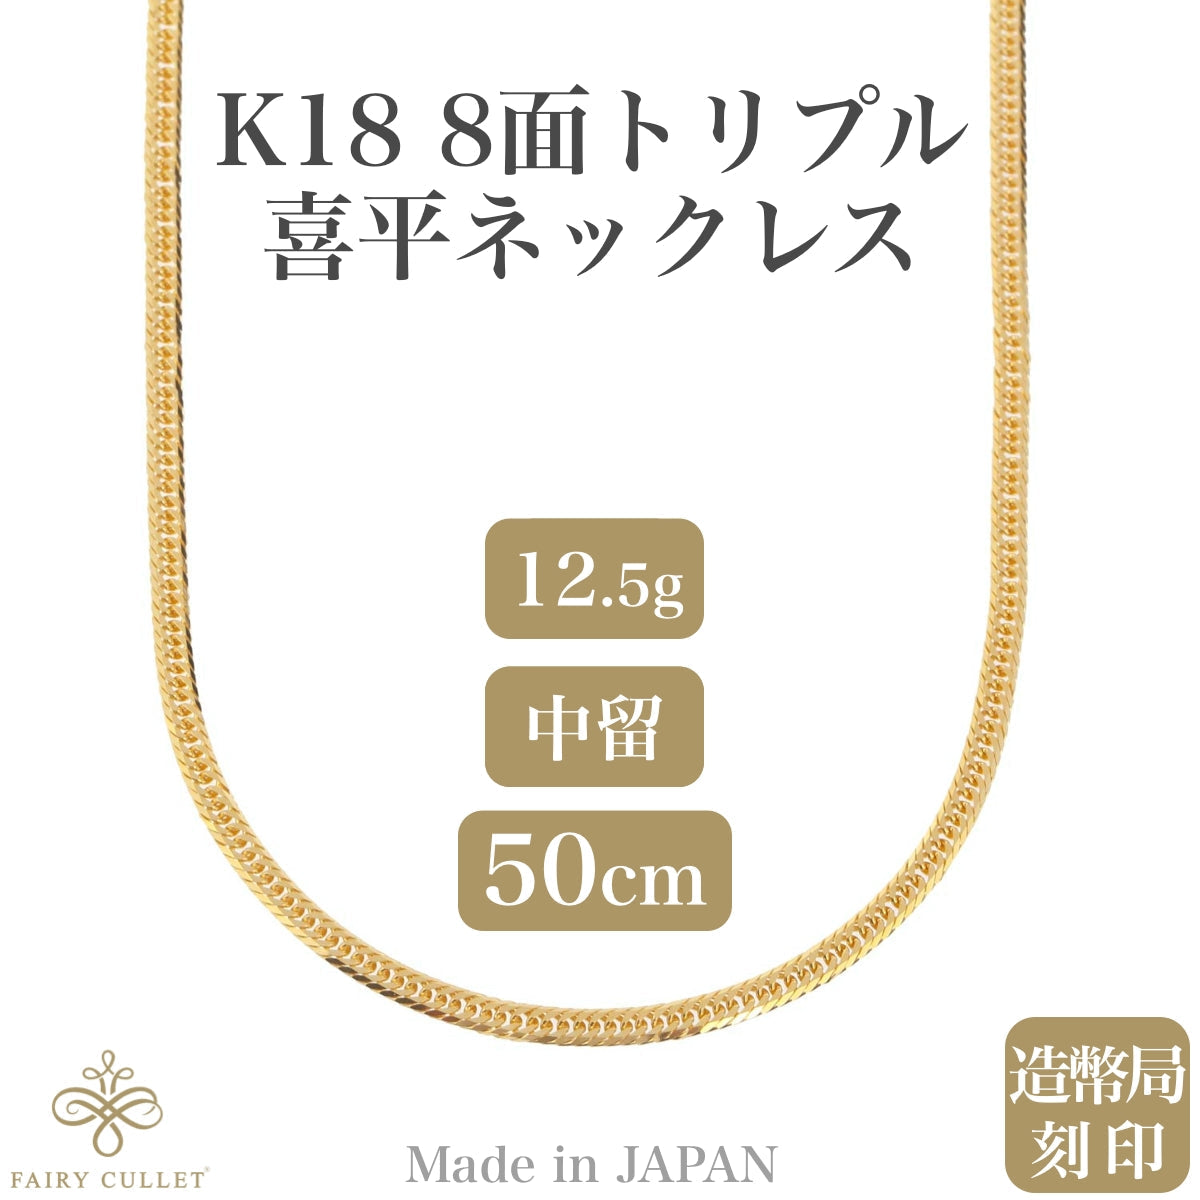 18金ネックレス K18 8面トリプル喜平チェーン 日本製 検定印 約12gUp 50cm 中留め